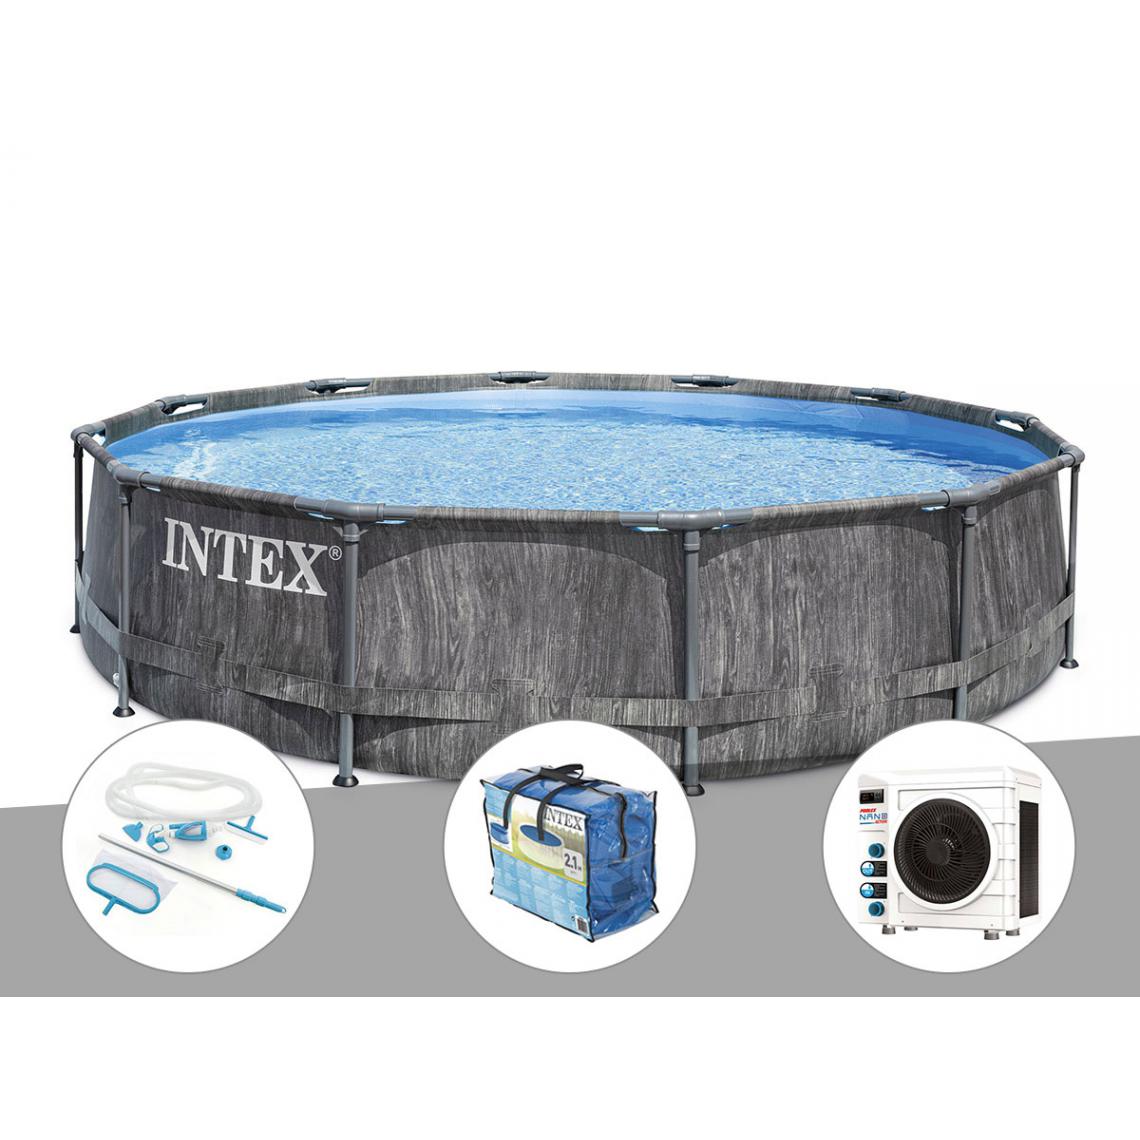 Intex - Kit piscine tubulaire Intex Baltik ronde 5,49 x 1,22 m + Kit d'entretien + Bâche à bulles + Pompe à chaleur - Piscine Tubulaire